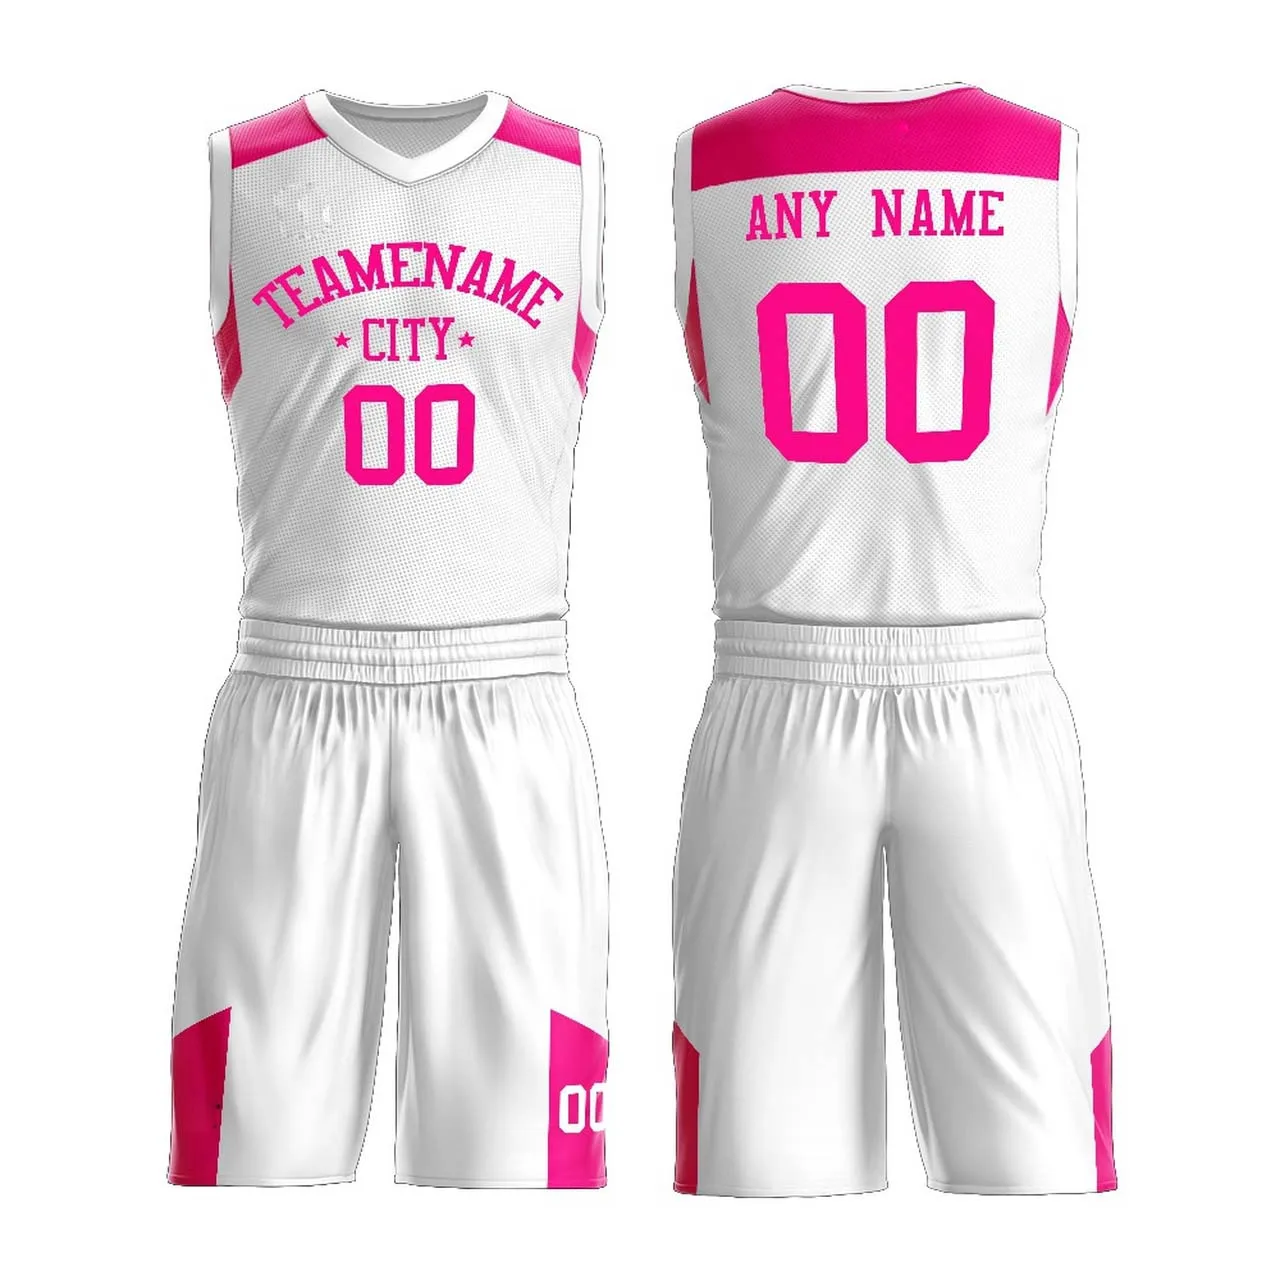 Women's Basketball Uniform? Baggy Knee Length Shorts? Matching Jersey? -  Daz 3D Forums